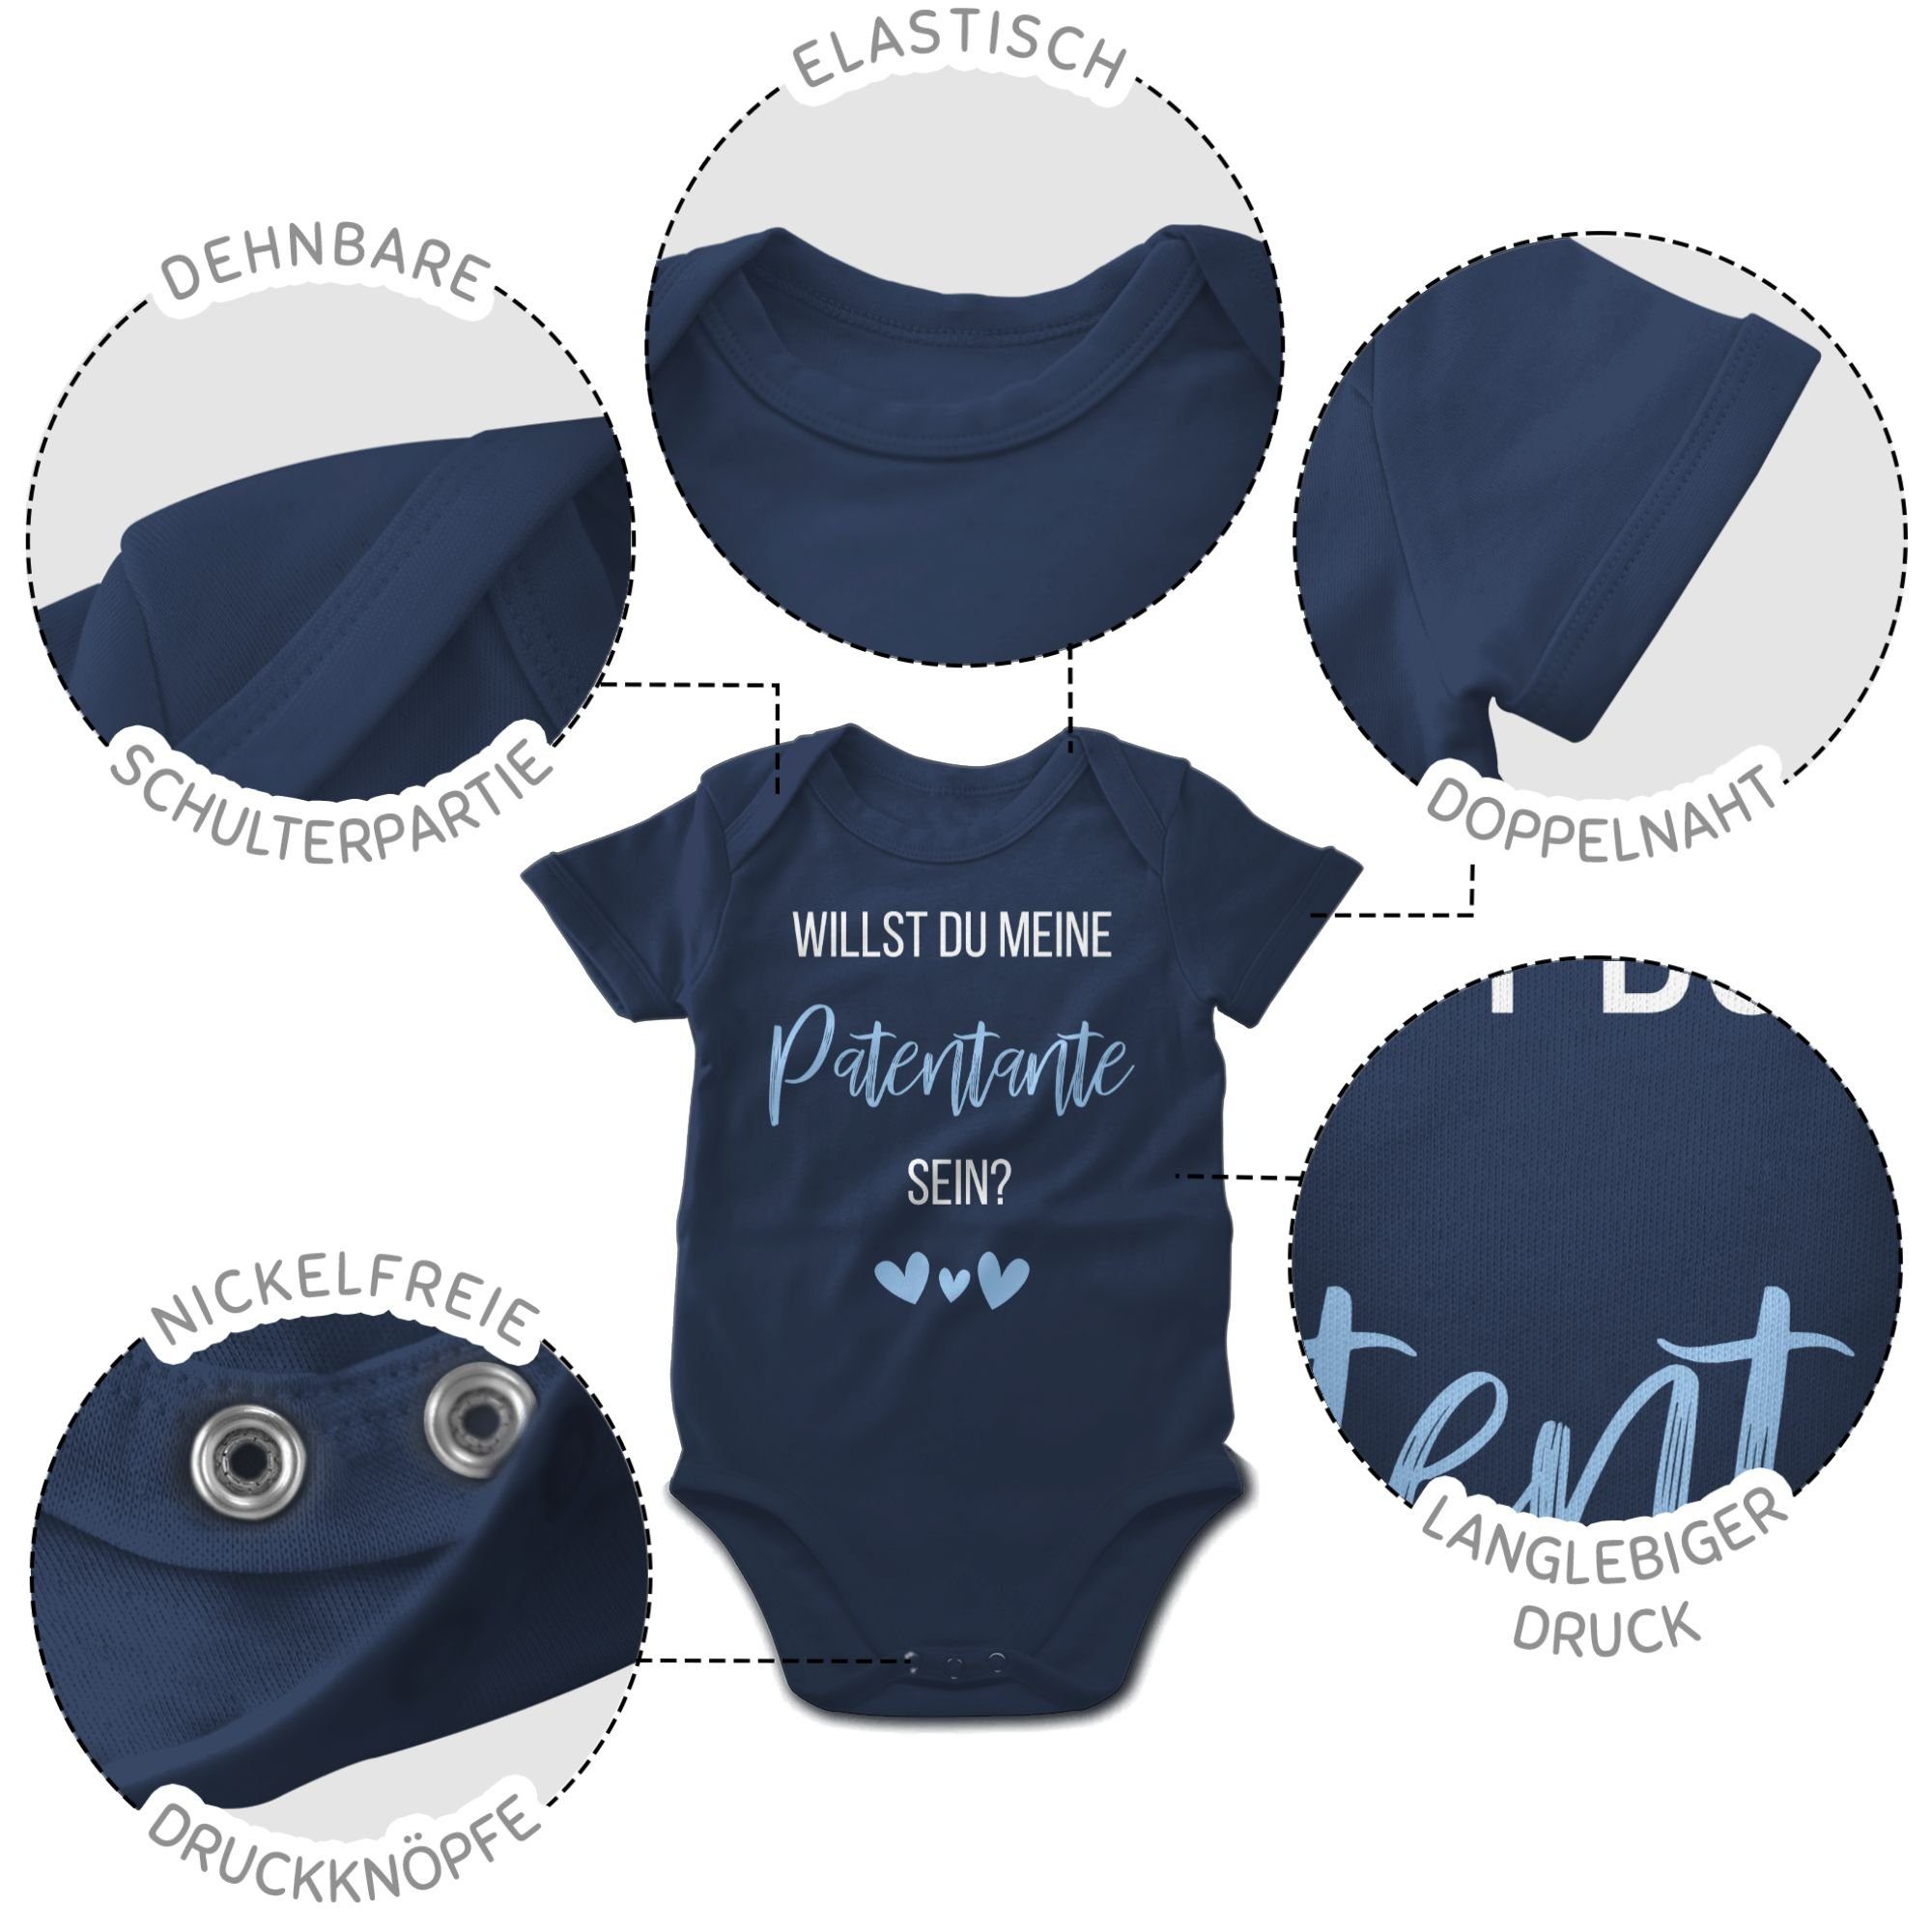 meine sein? Babyblau Willst Patentante Shirtracer Baby Navy Blau Shirtbody 1 Patentante du